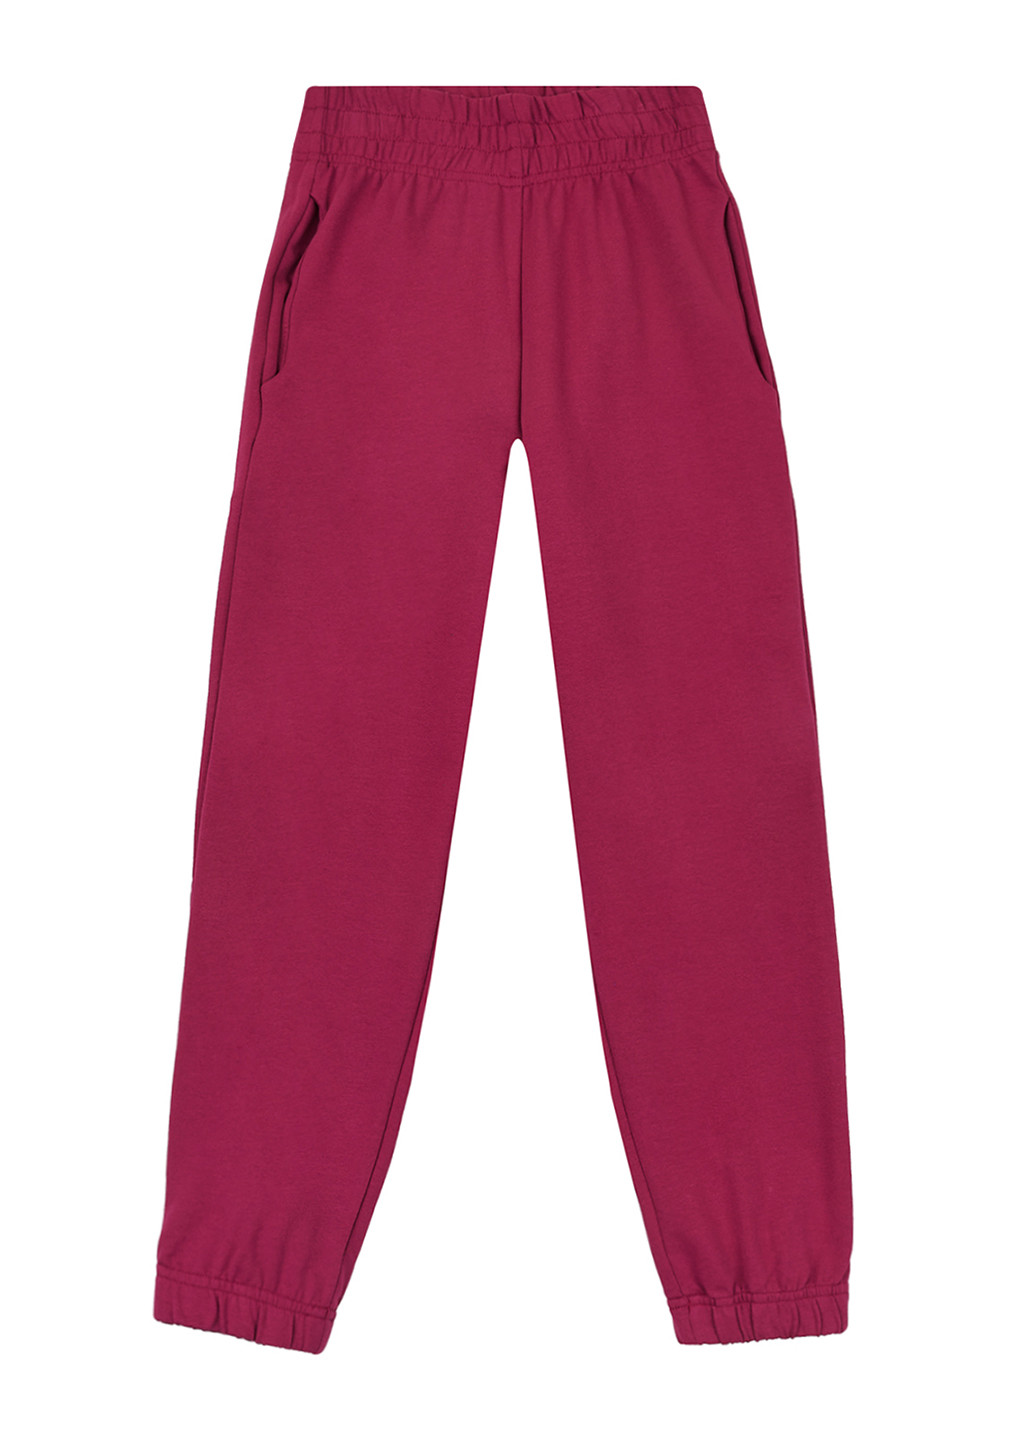 Светло-бордовый демисезонный костюм (худи, брюки) брючный Z16